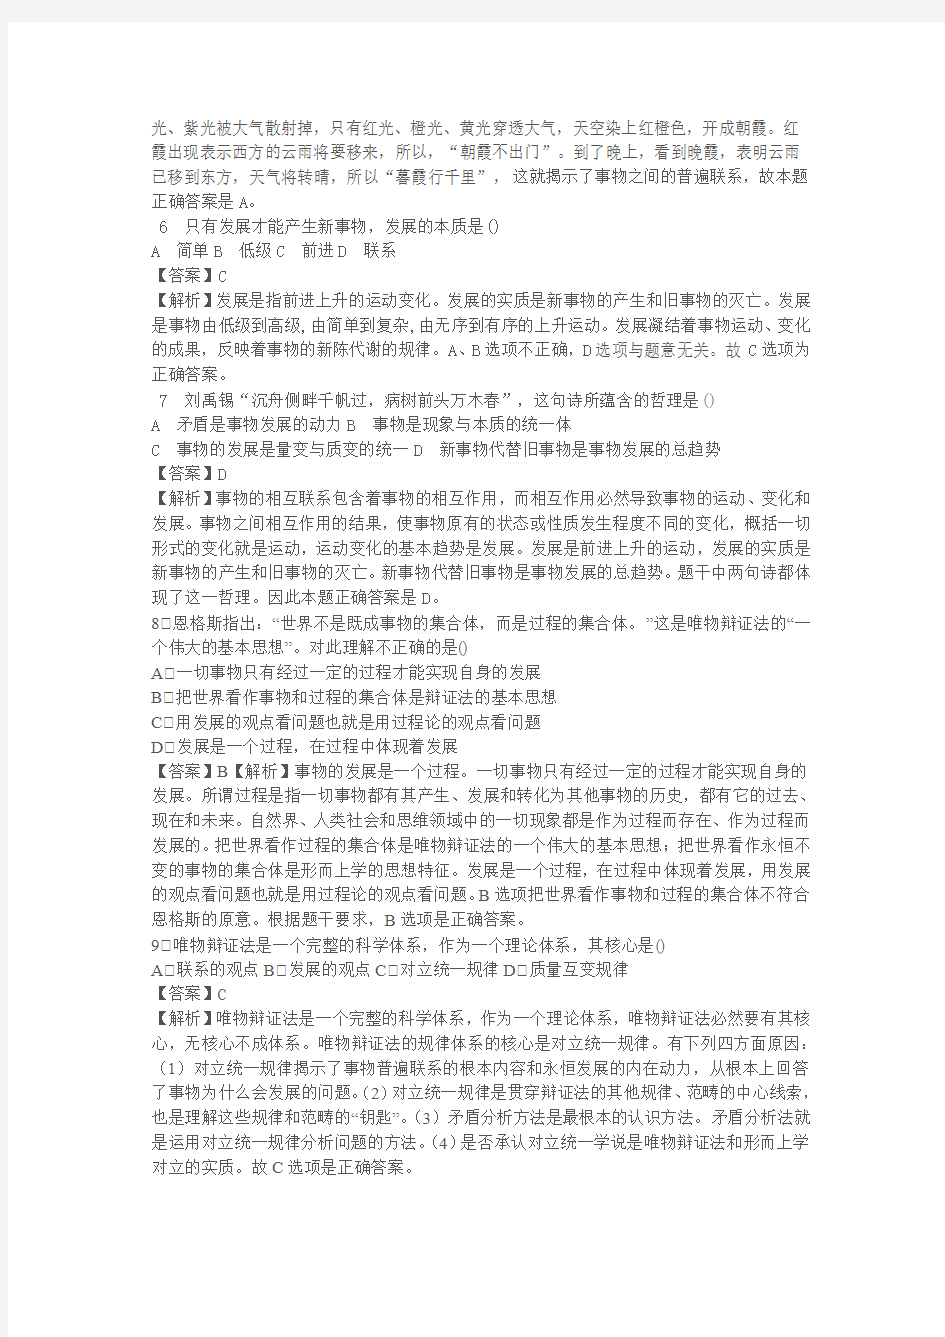 【李海洋2013考研政治暑期强化】随堂练习——马原(辩证法)单选答案